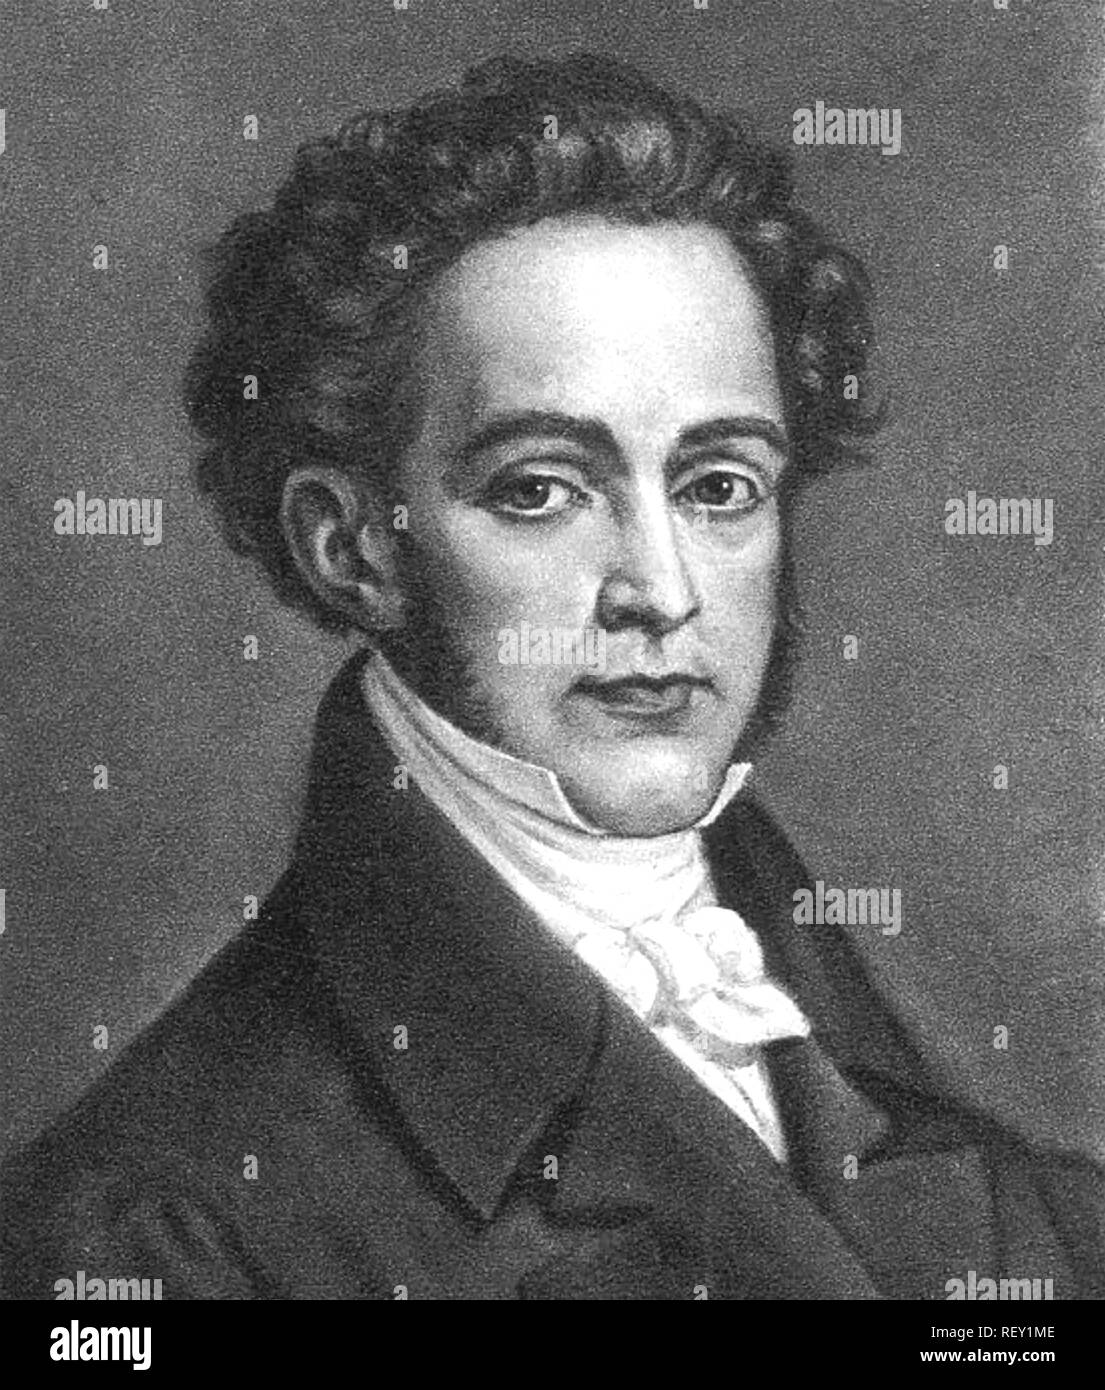 VINCENZO BELLINI (1801-1835) Italian opera composer Stock Photo